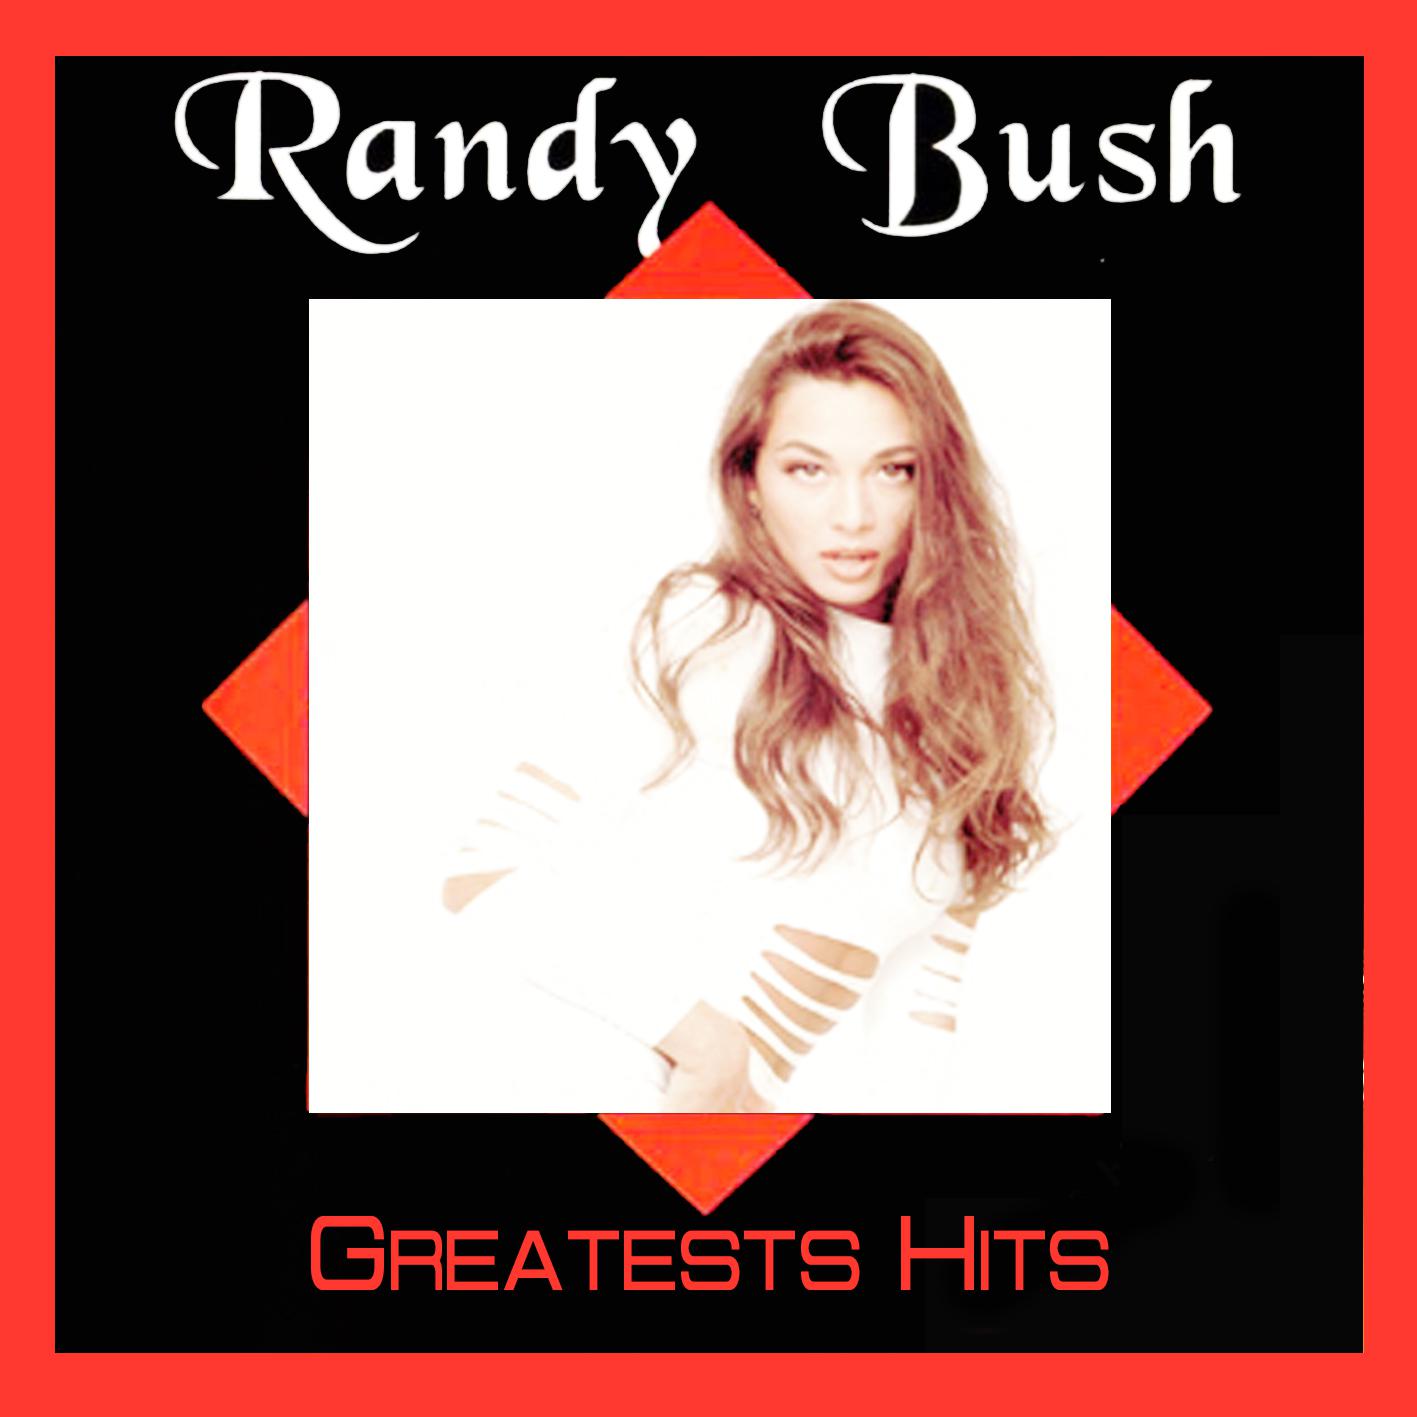 Randy Bush - La Isla Bonita